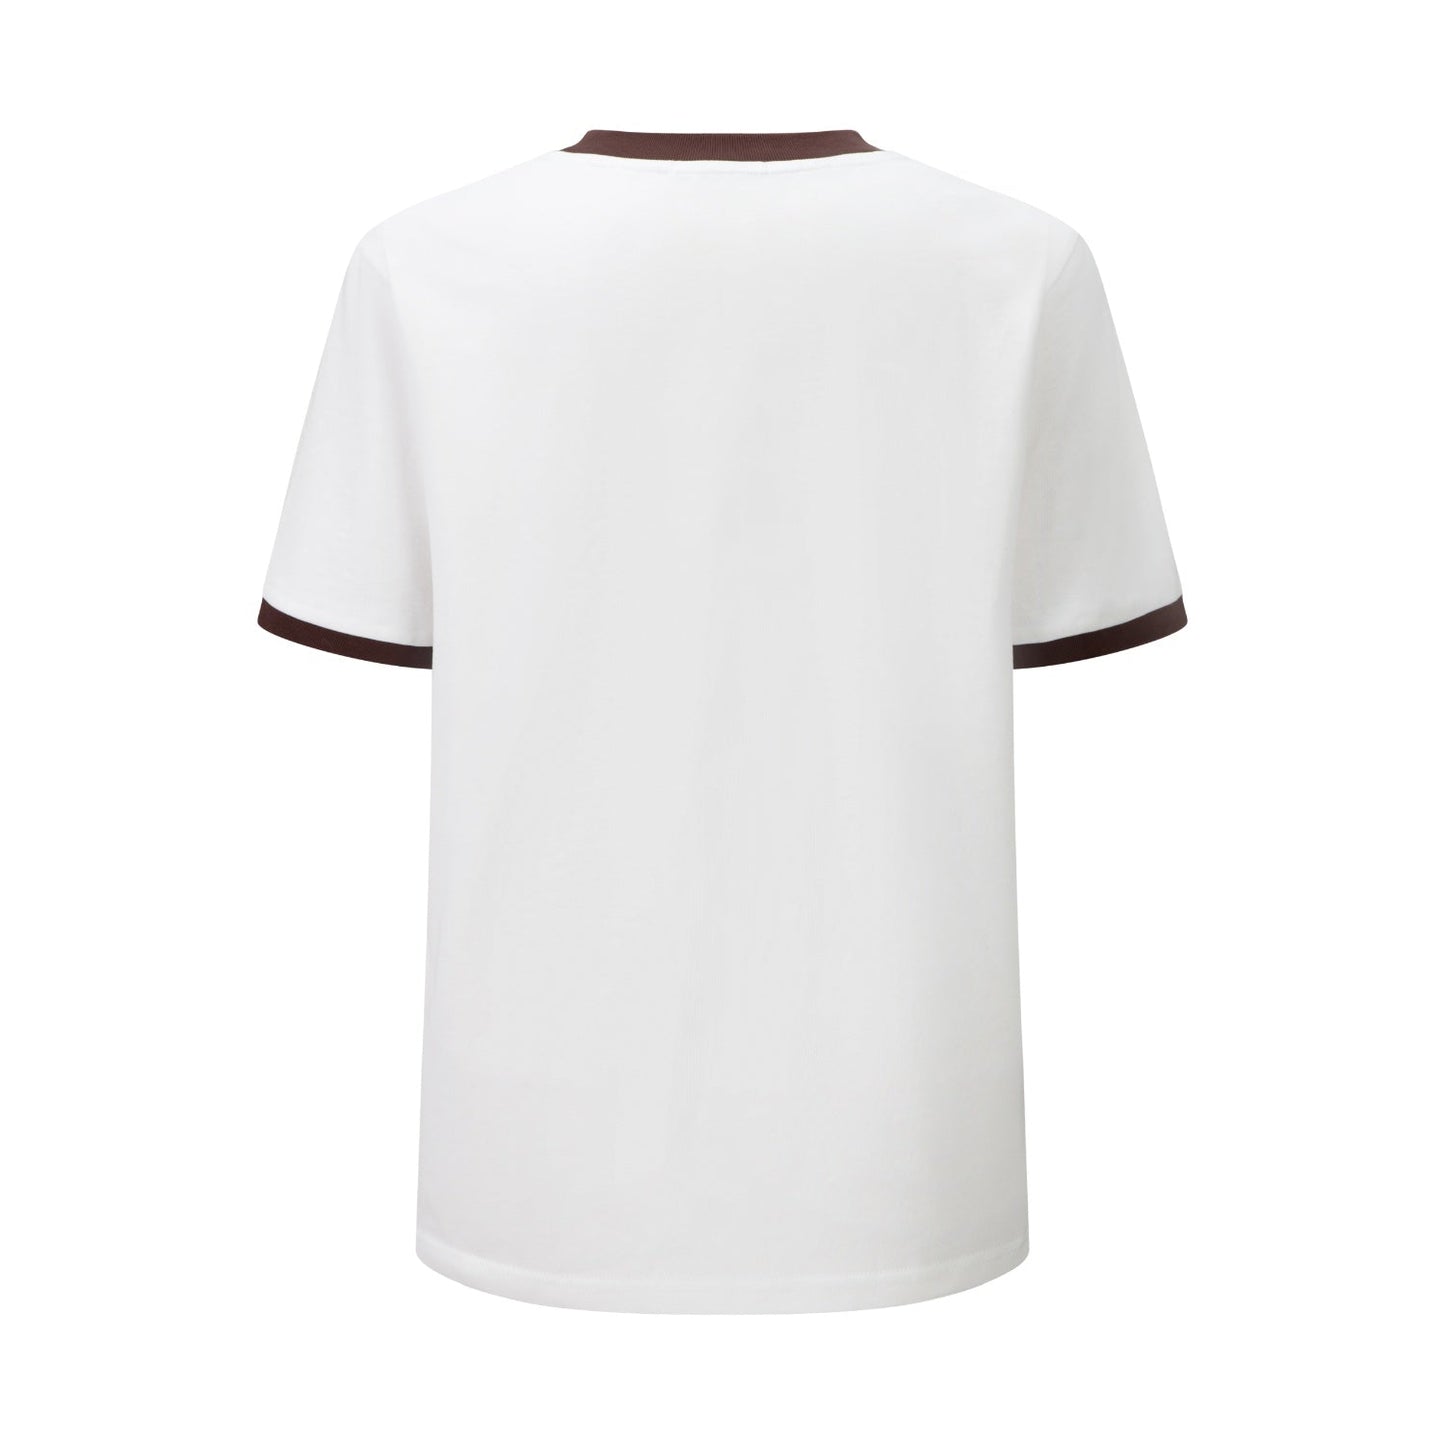 Herlian Brown And White Tennis Rabbit T-shirt